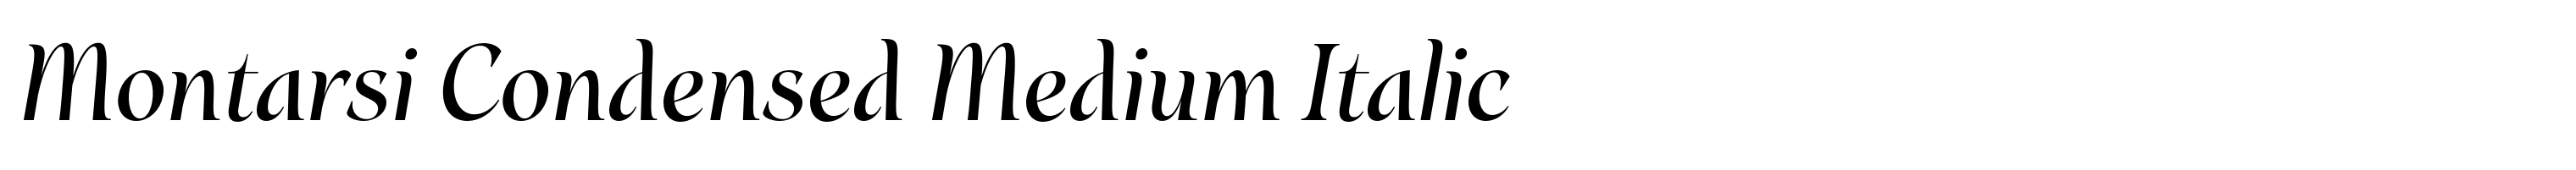 Montarsi Condensed Medium Italic